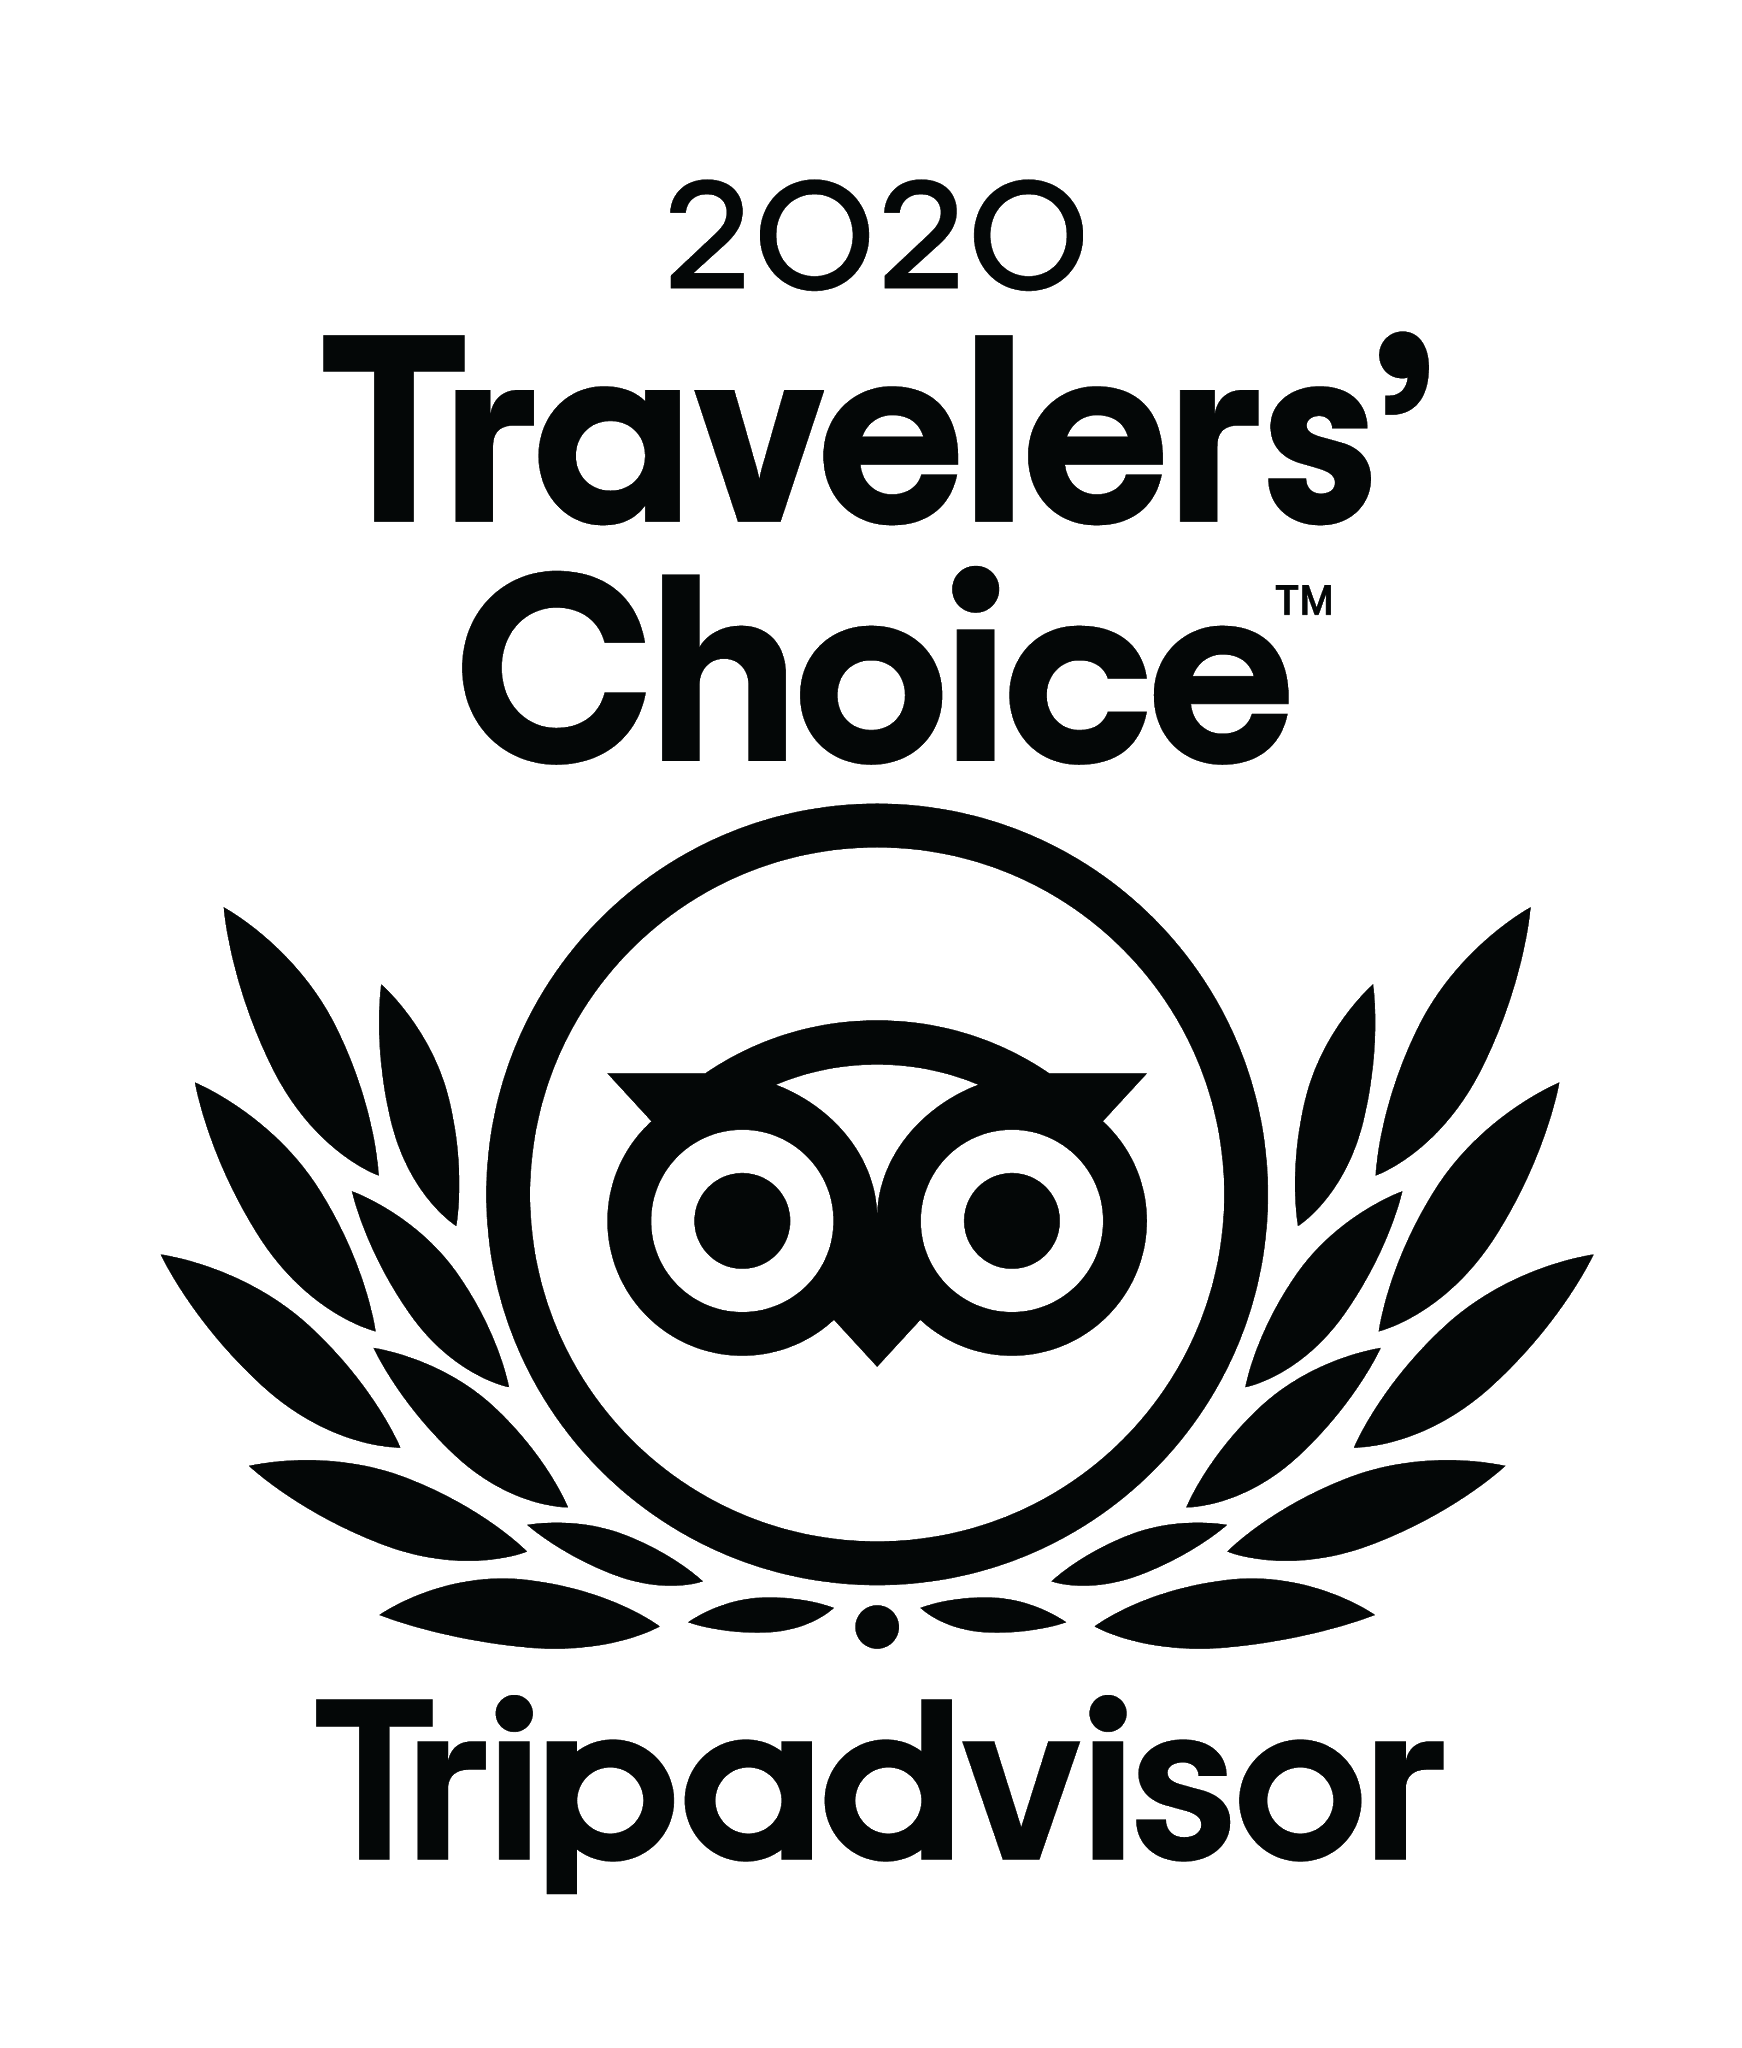 Sesc Paraná - O Sesc Caiobá recebeu o Traveller's Choice 2020, uma  premiação do TripAdvisor que, baseado nas avaliações dos viajantes,  seleciona os melhores hotéis do mundo! Incrível, não? Conheça mais sobre